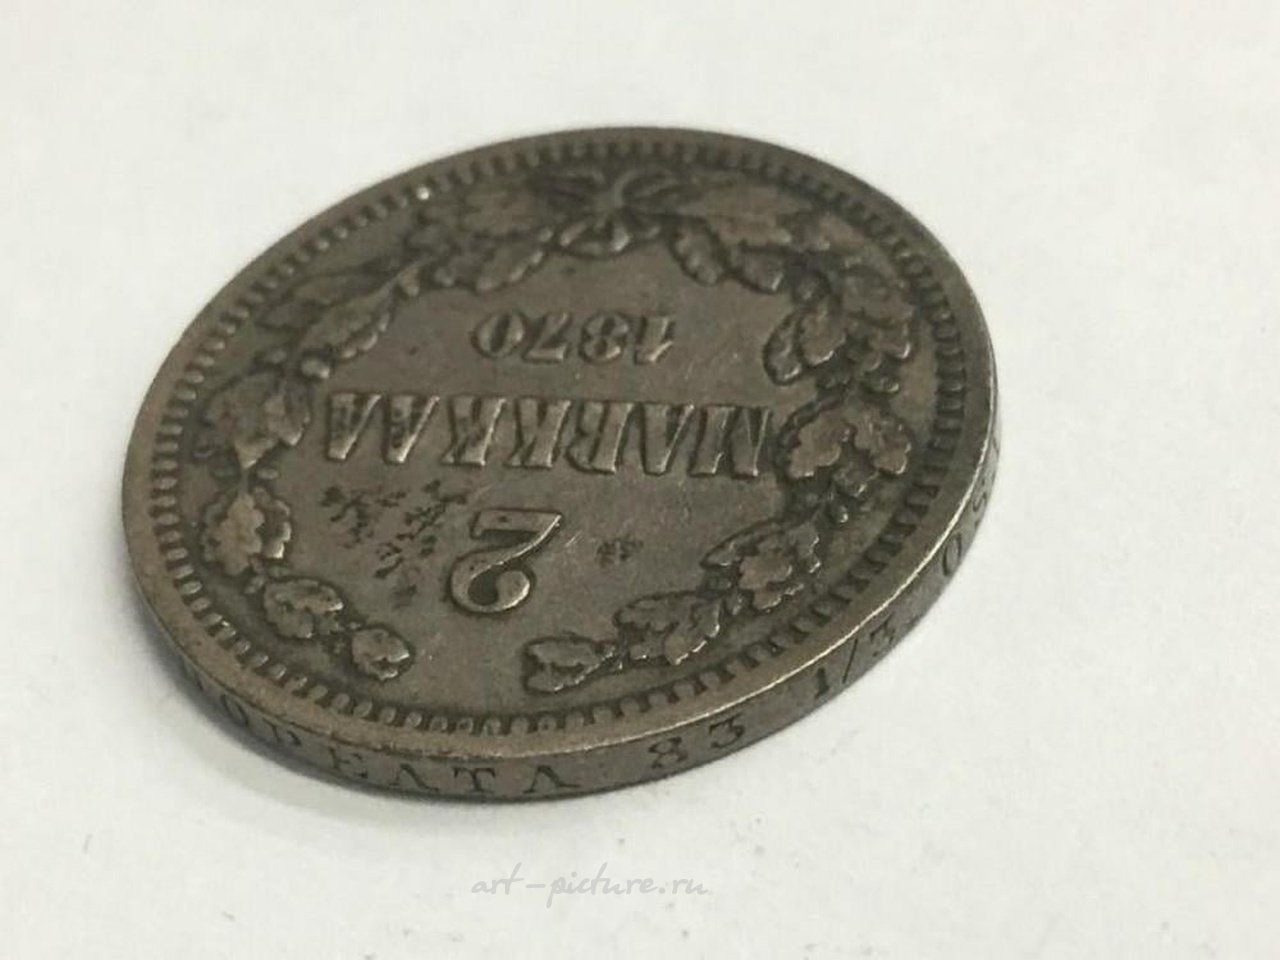 Русское серебро , Финляндия 1870 года (под российской оккупацией) - 2 марки, 86,8% серебра